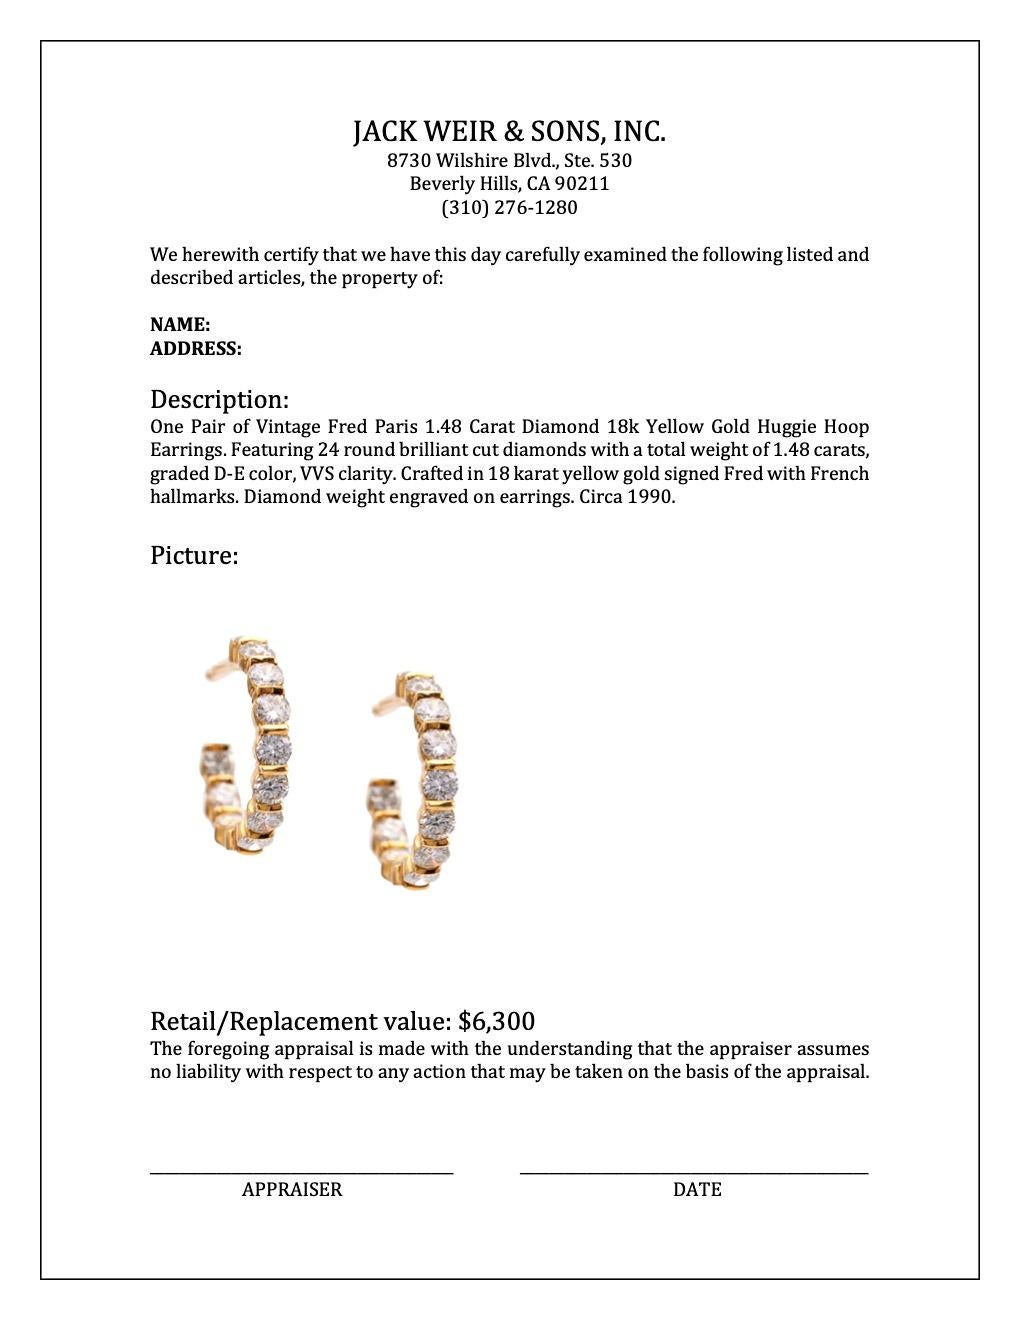 Vintage Fred Paris 1.48 Carat Diamond 18k Yellow Gold Huggie Hoop Earrings For Sale 1